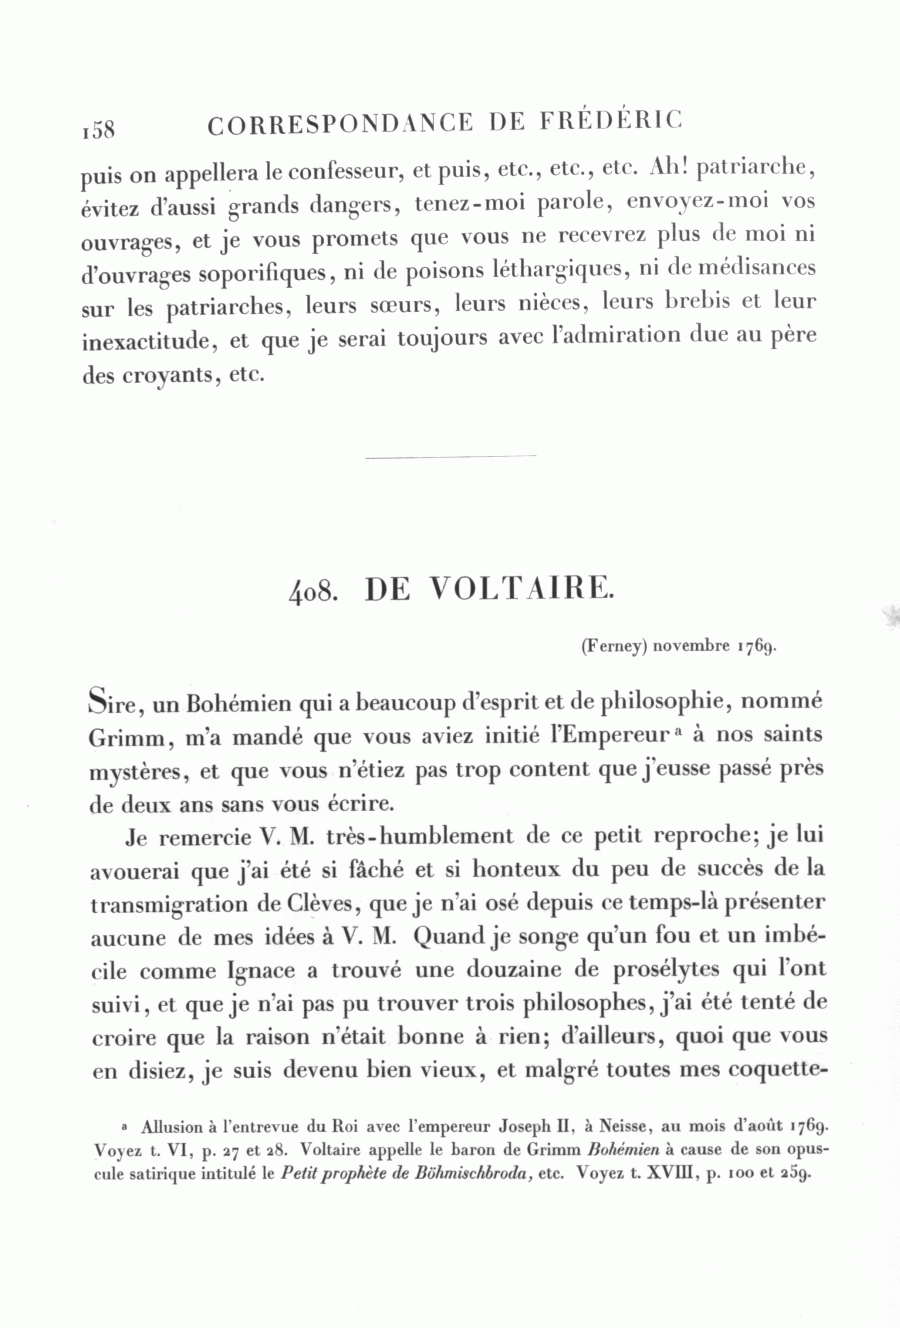 S. 158, Obj. 2